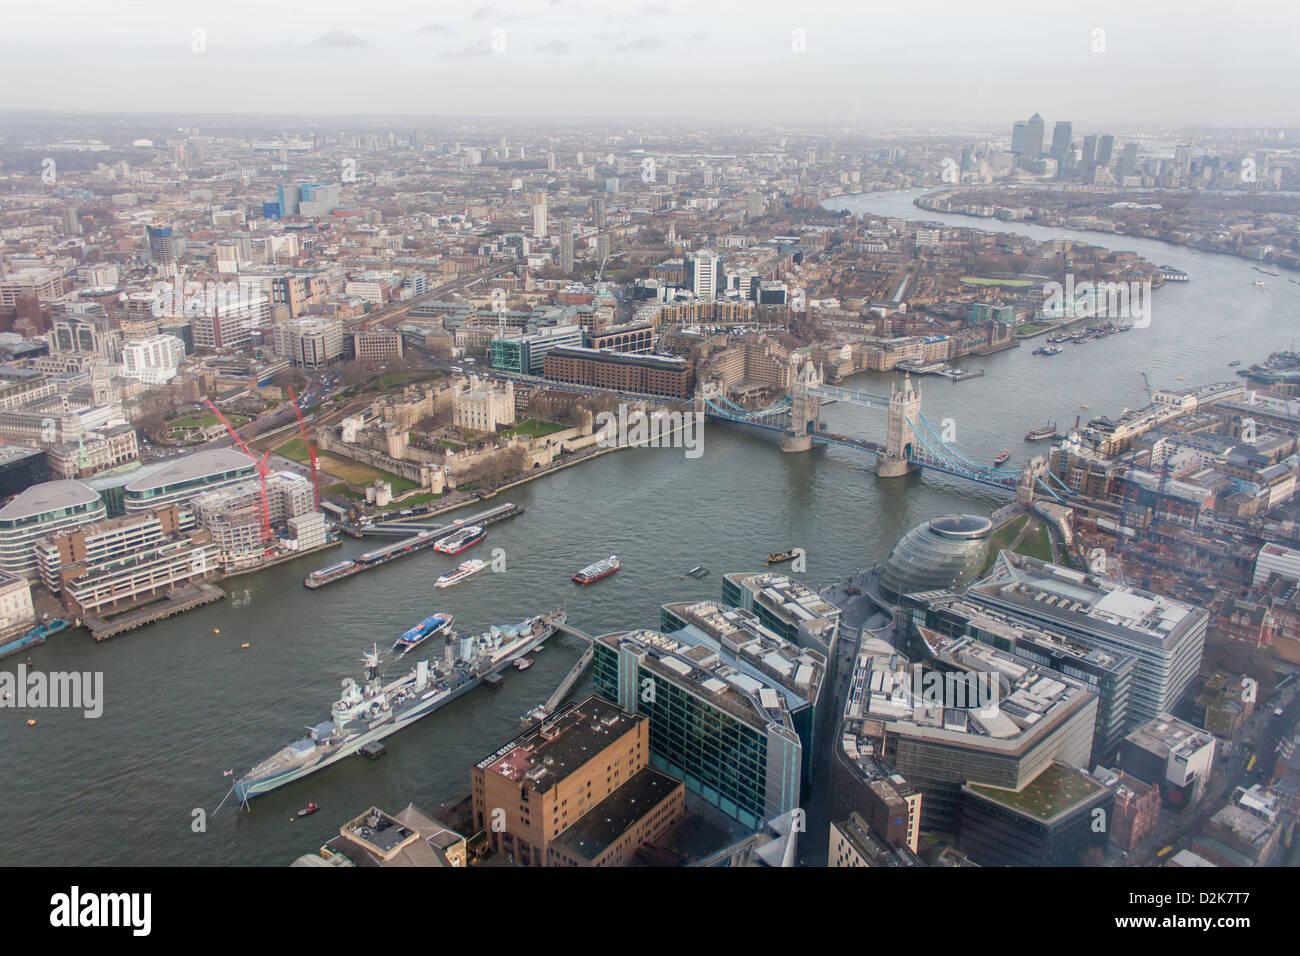 Le HMS Belfast, l'Hôtel de Ville, la Tour de Londres, Tower Bridge, Canary Wharf, la Tamise depuis le tesson Banque D'Images